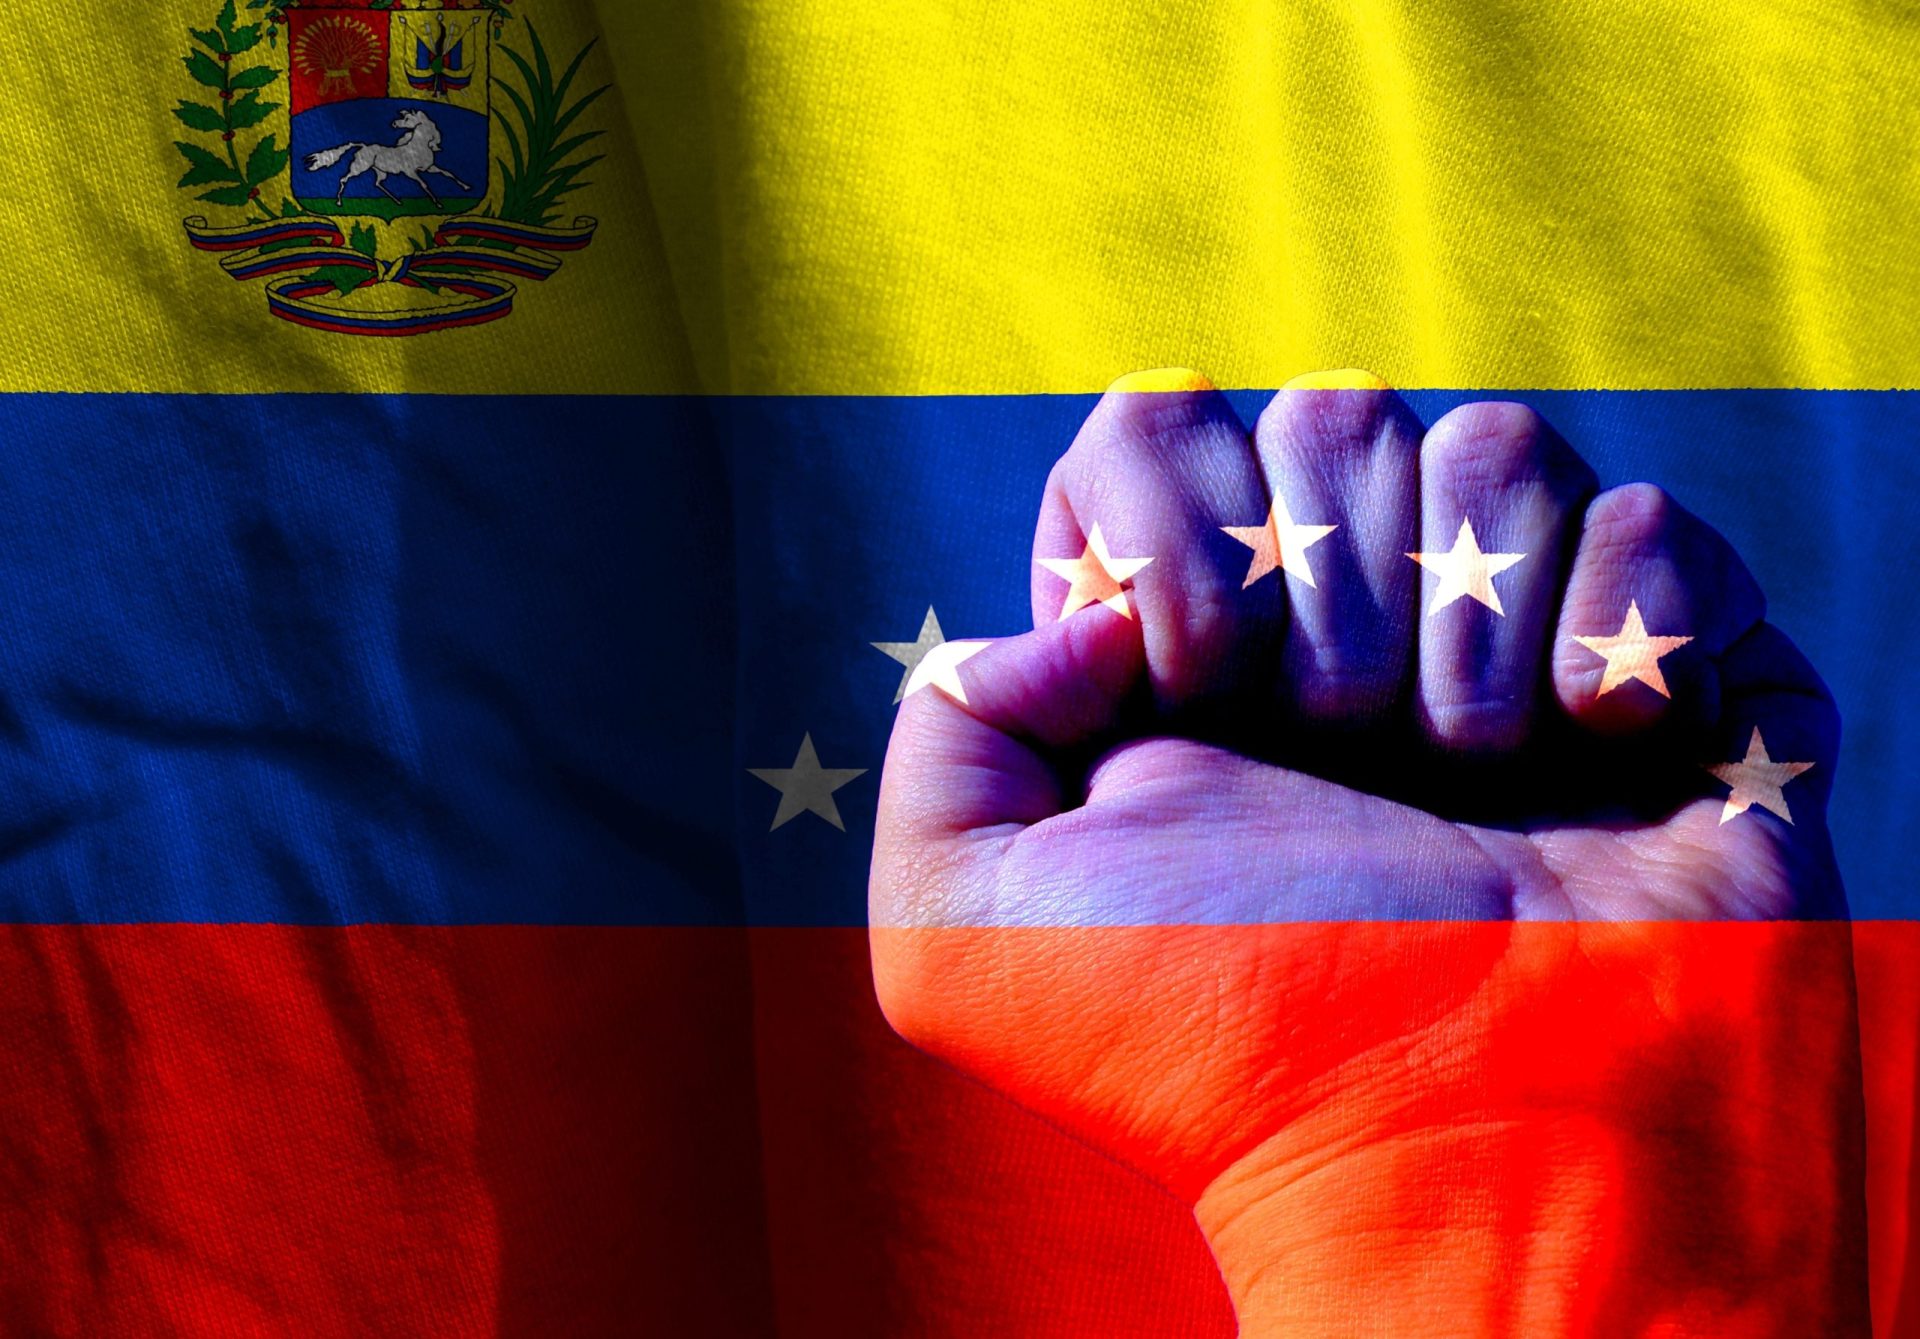 Prémio Sakharov 2017 é atribuído à Oposição Democrática na Venezuela